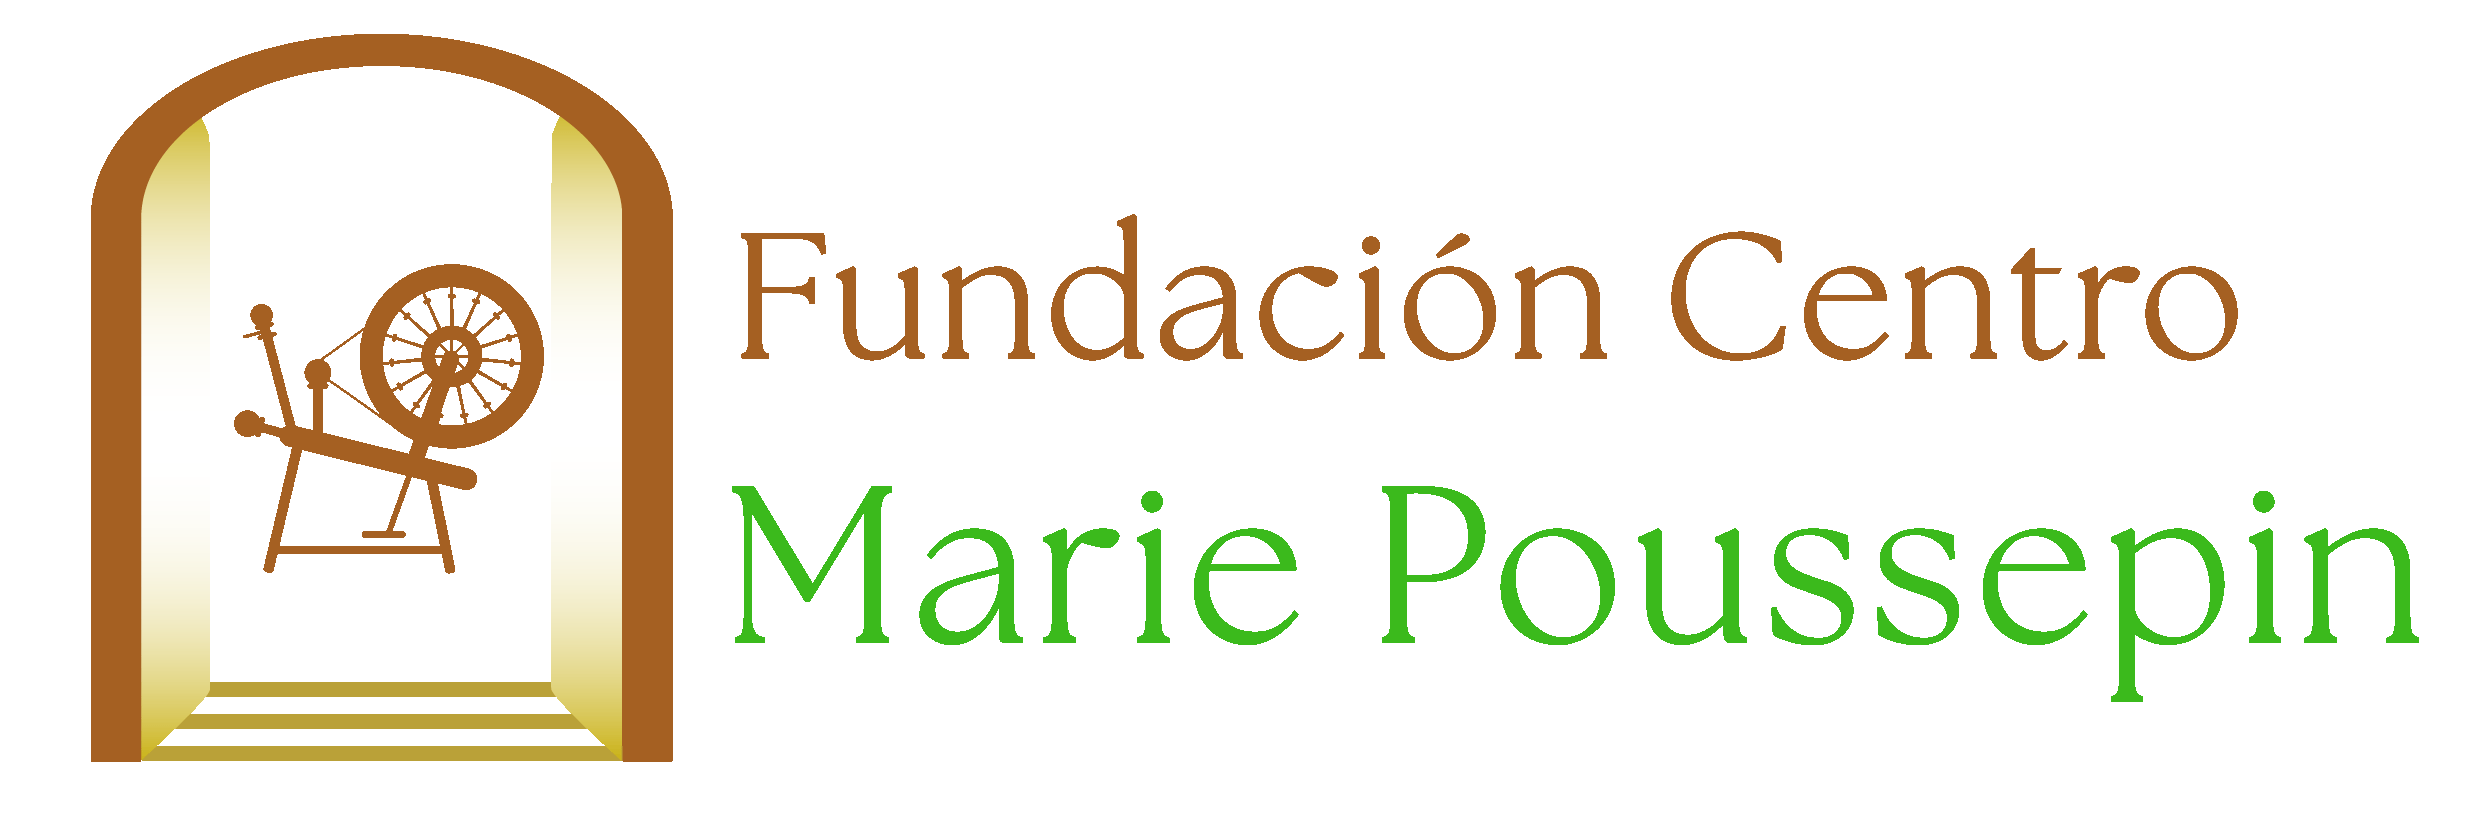 Fundación Centro Marie Poussepin